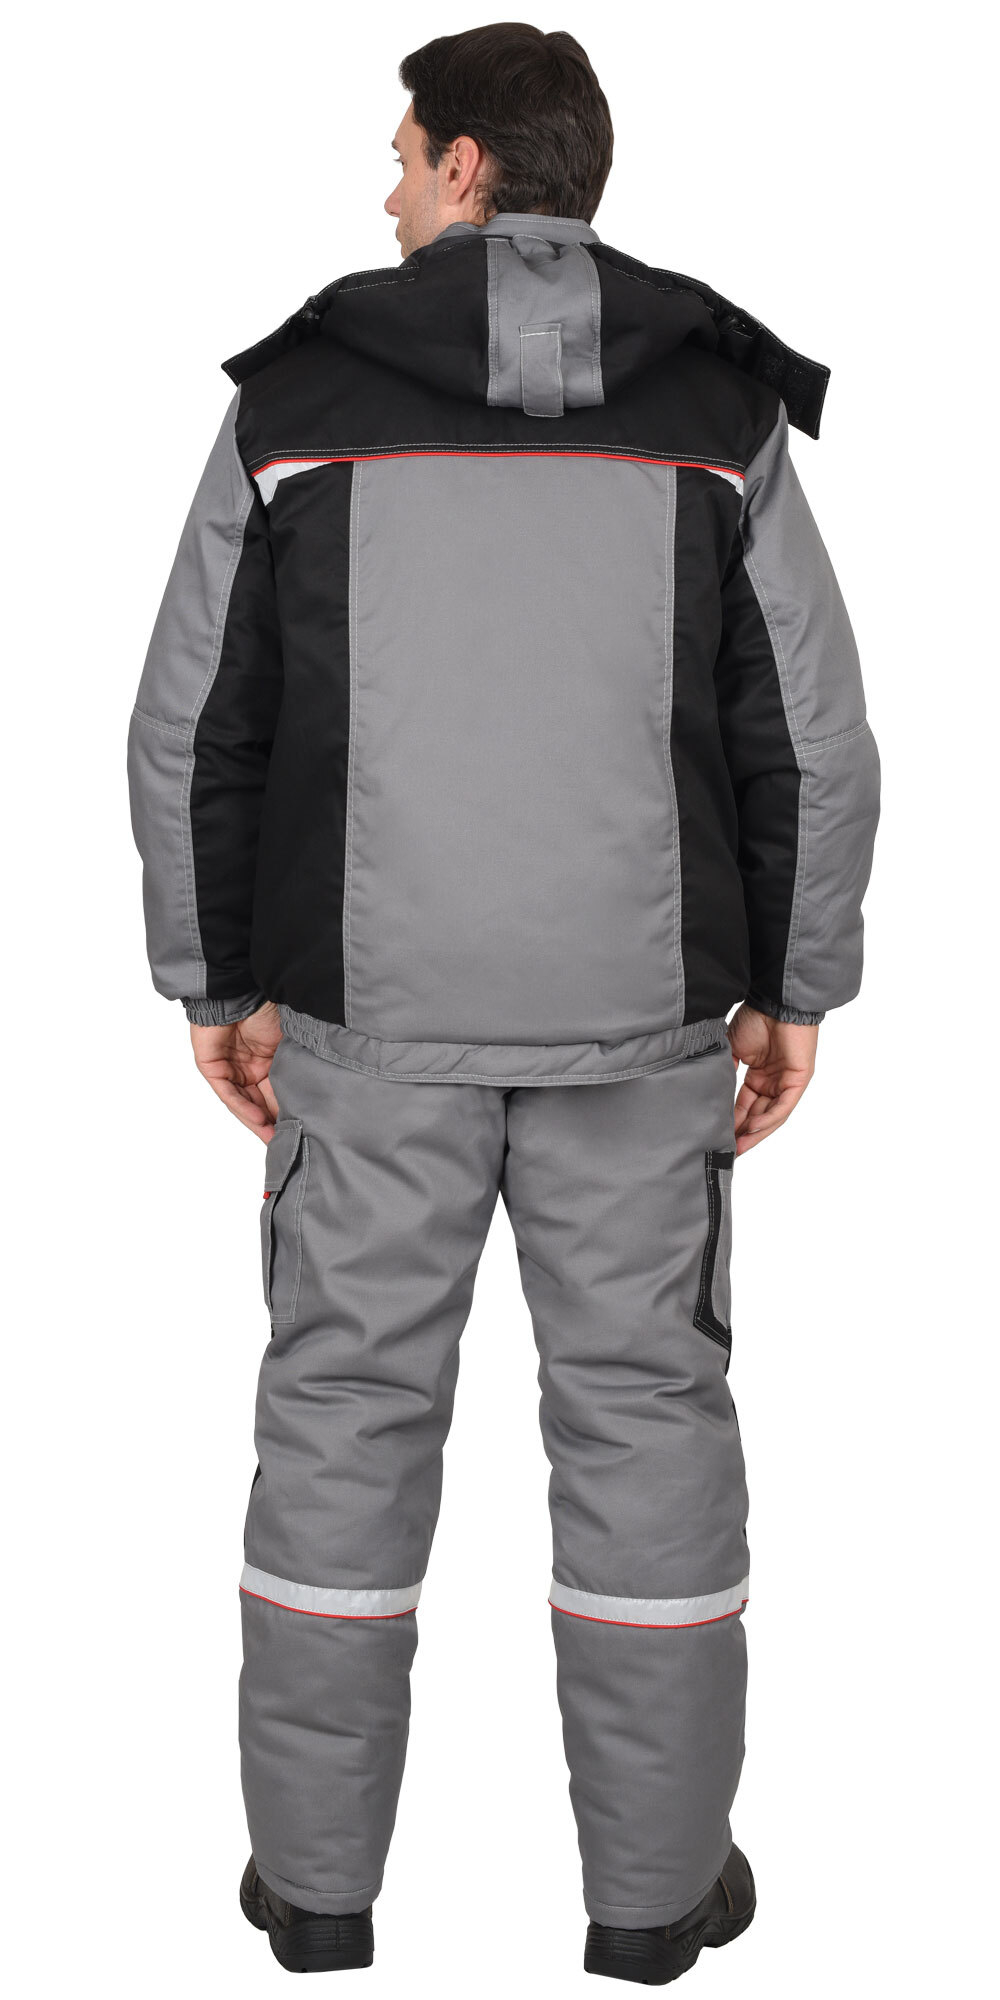 Костюм "Стан" зимний: куртка, п/к, средне-серый с черной и красной отделкой